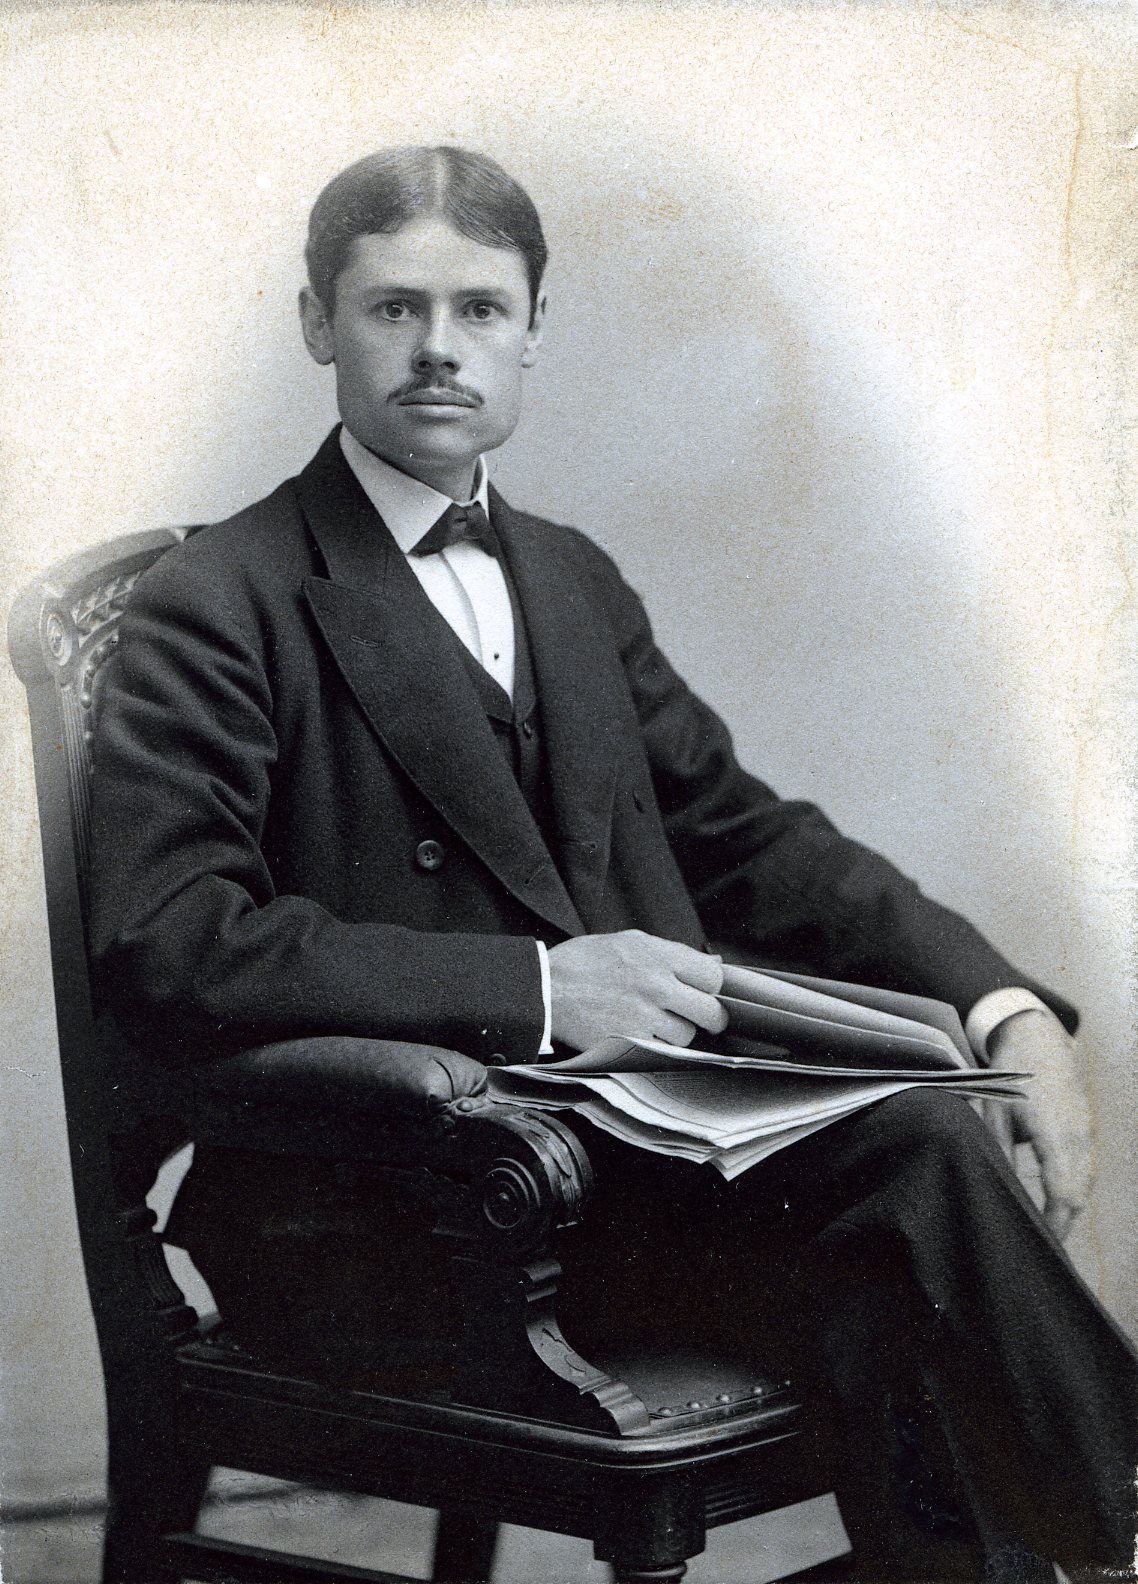 Member portrait of Franklin B. Kirkbride